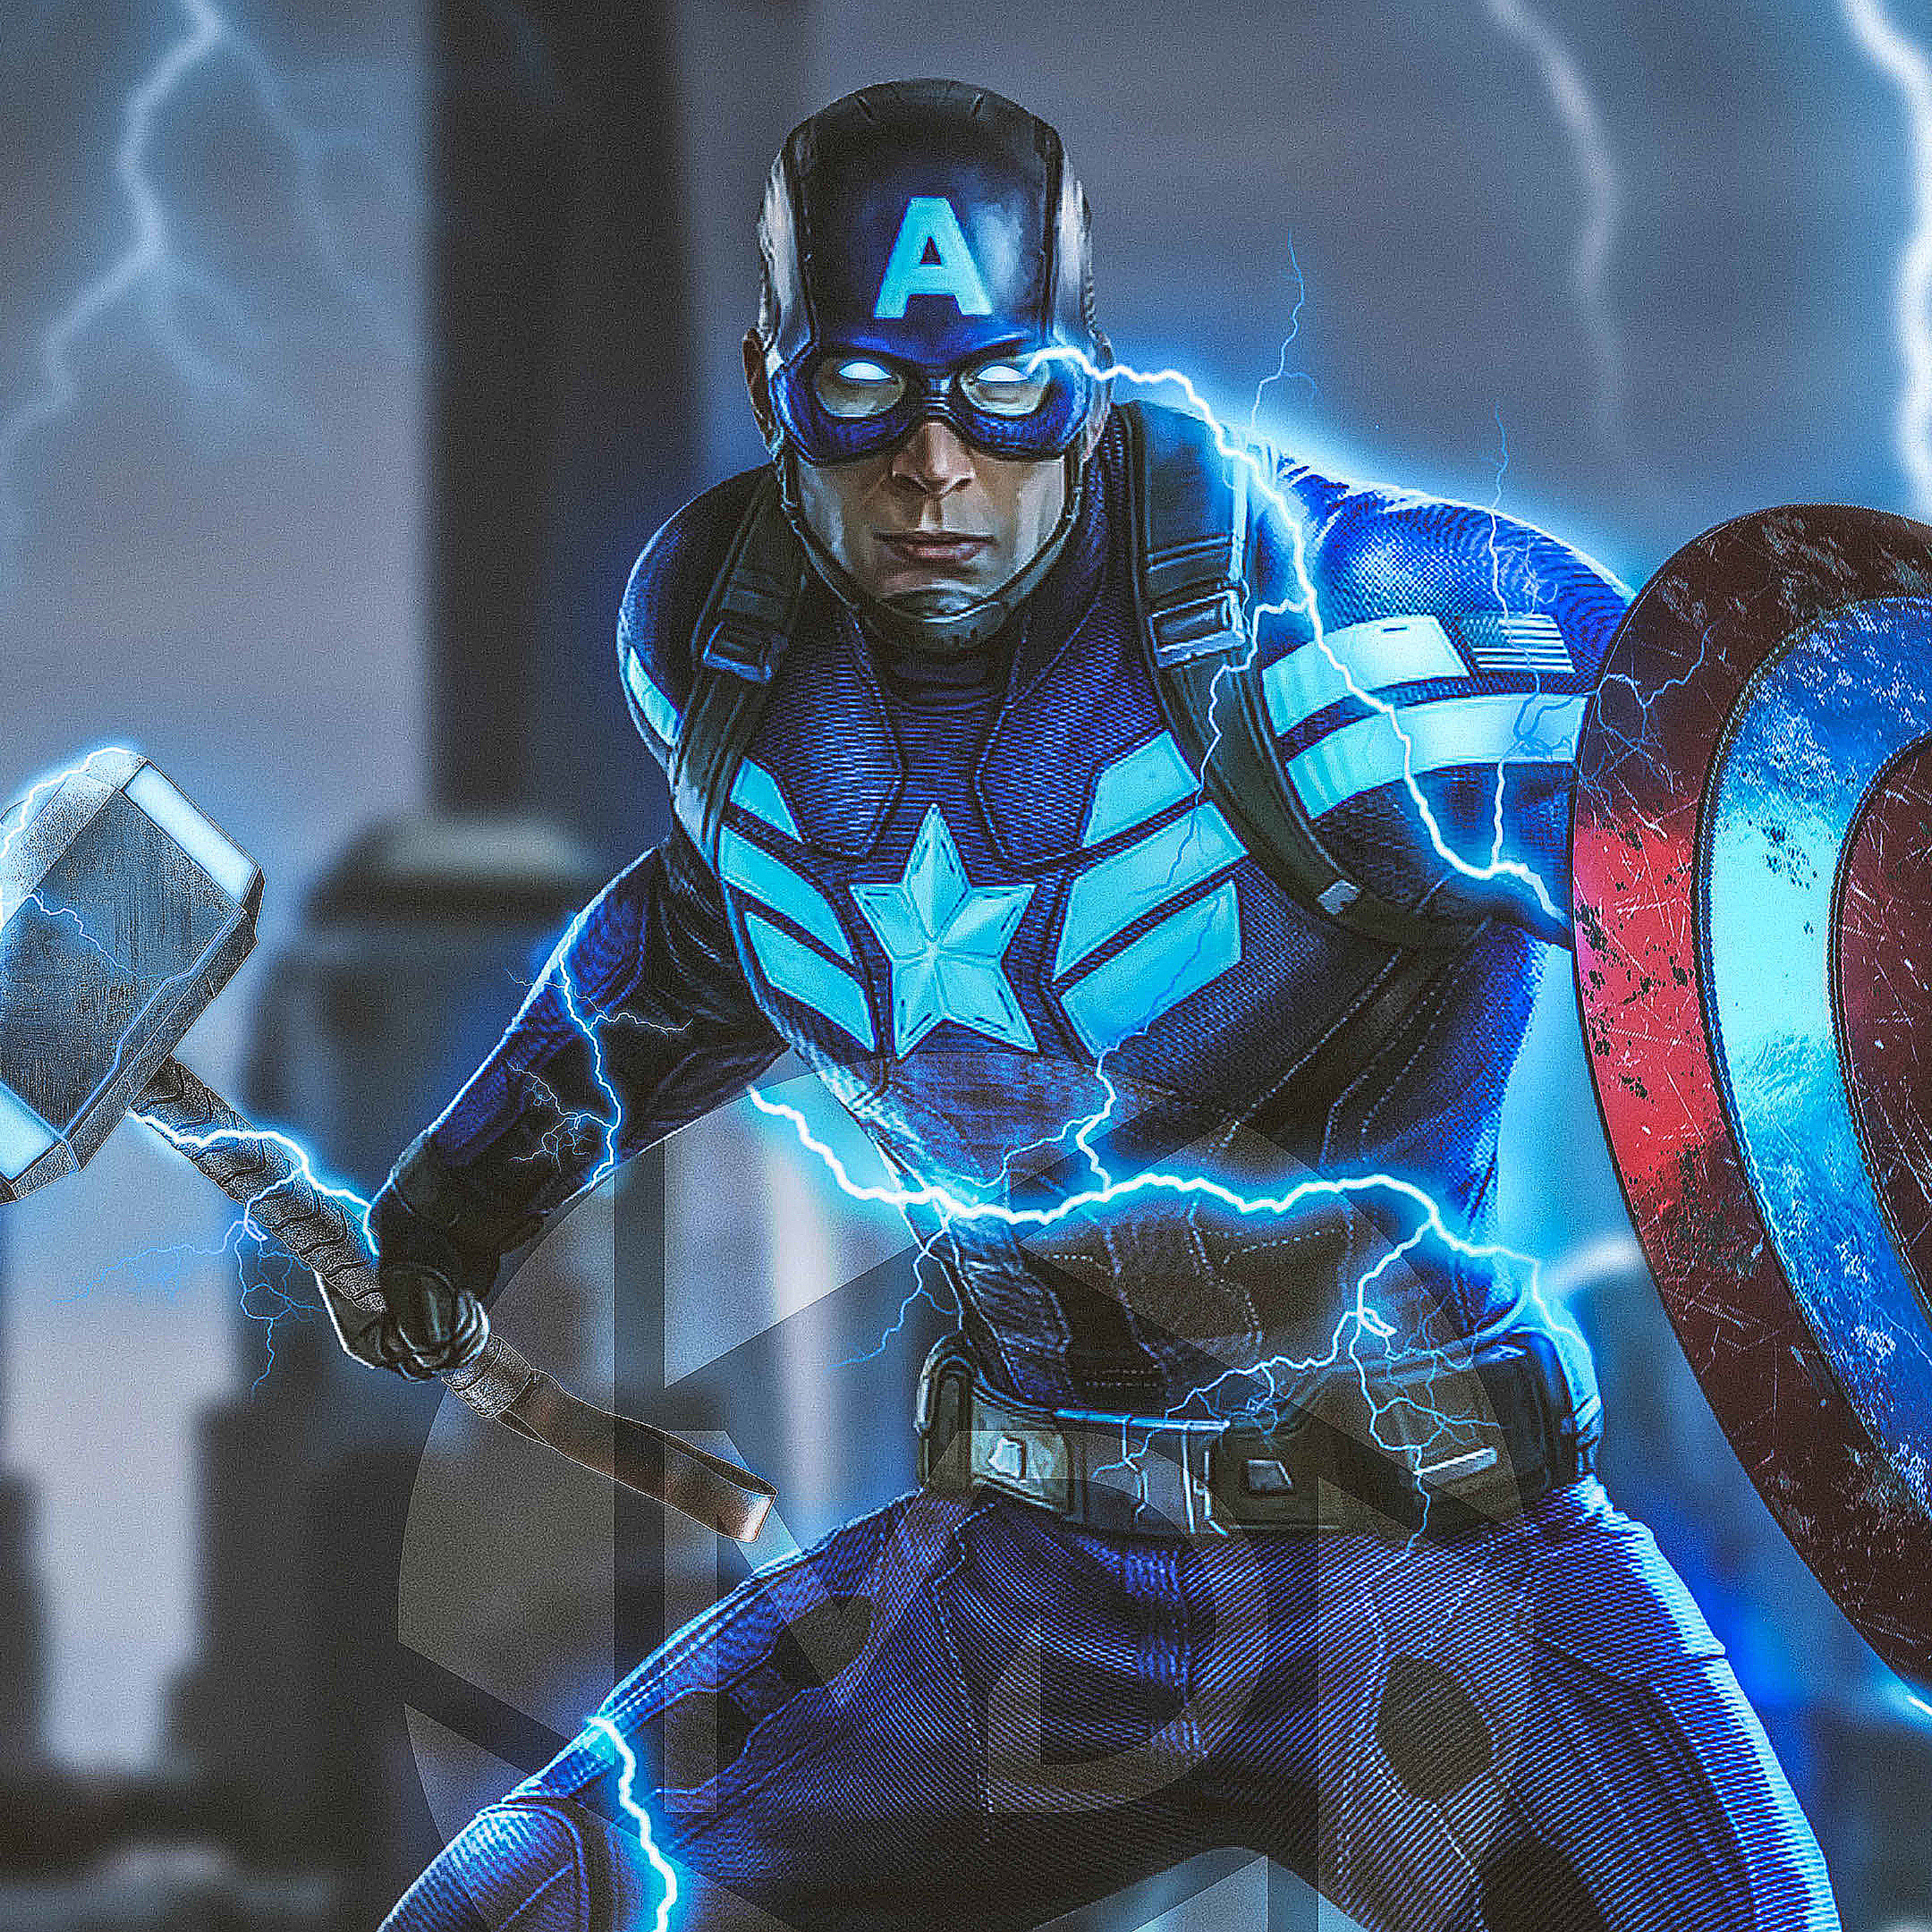 2932x2932 Captain America Mjolnir Avengers Endgame 4k 2019 Ipad Pro